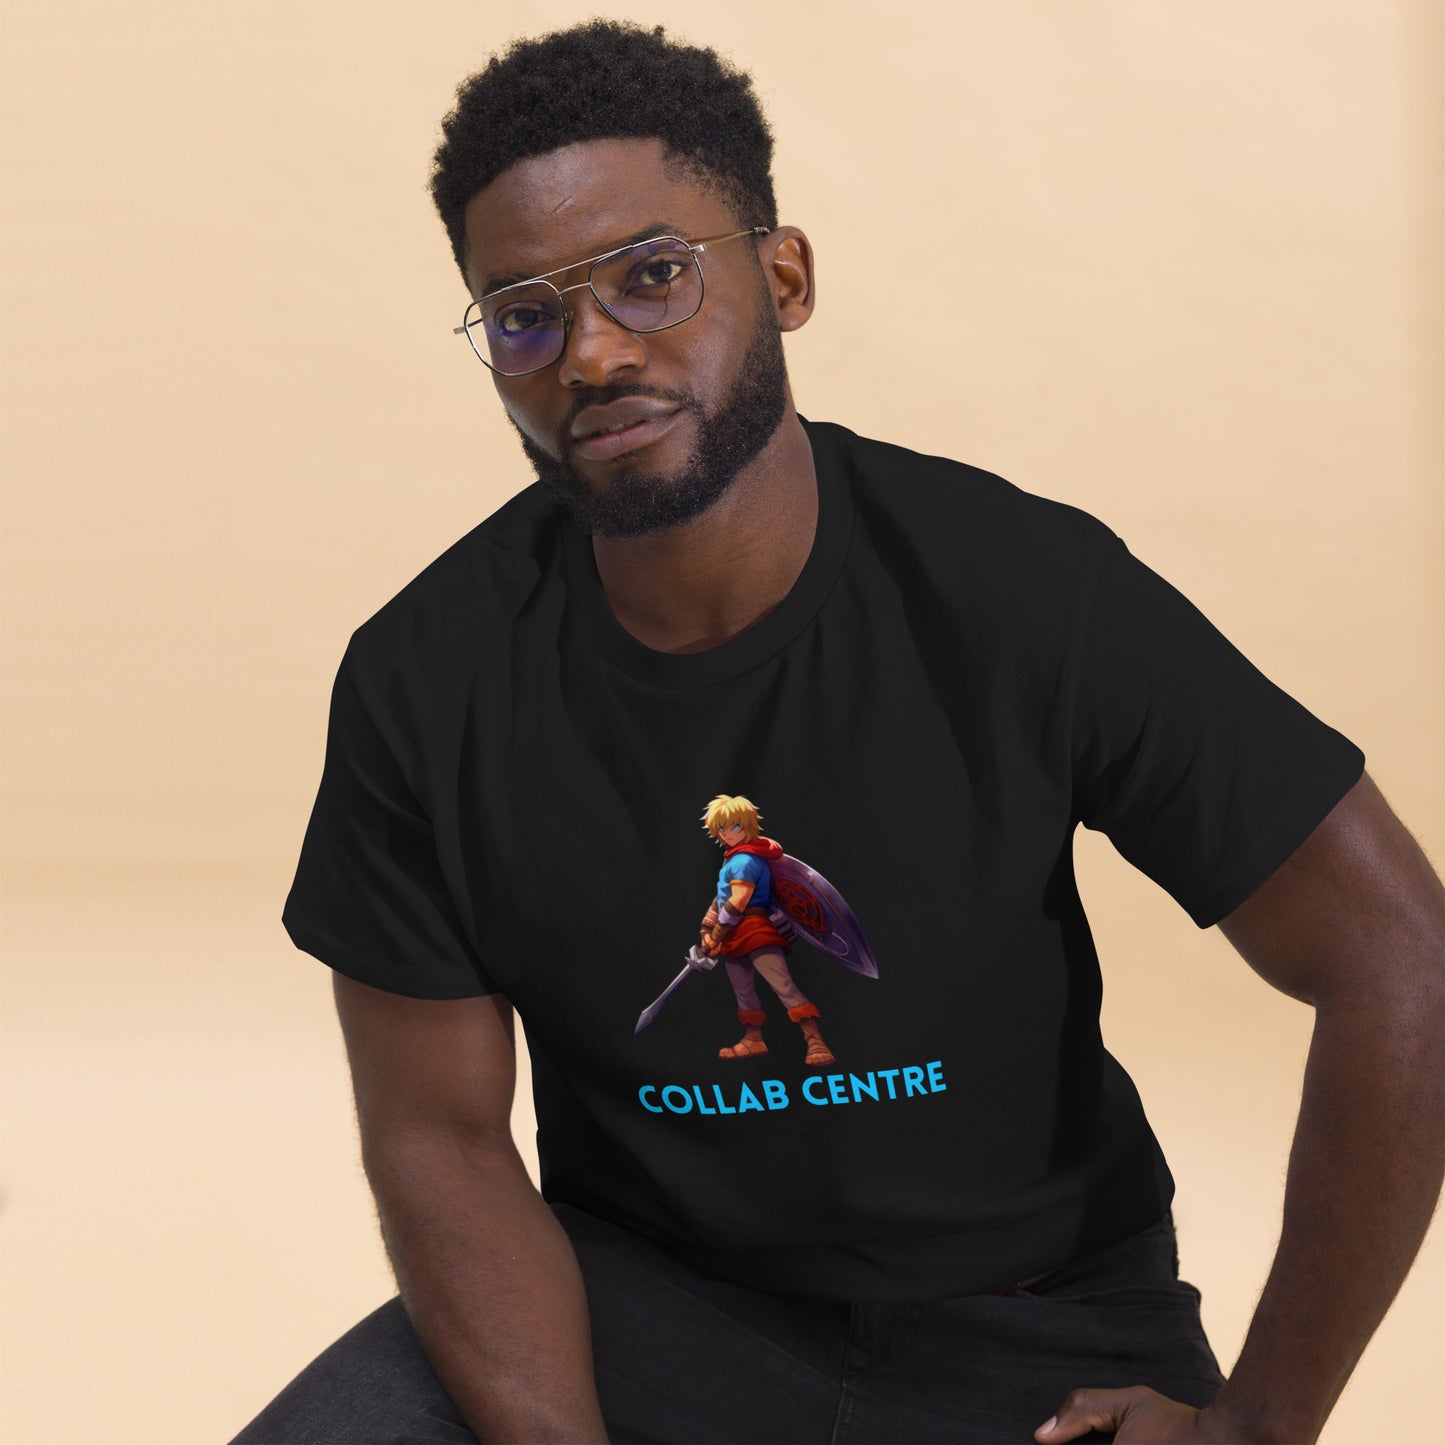 Collab Center Warrior Text Camiseta clásica para hombre